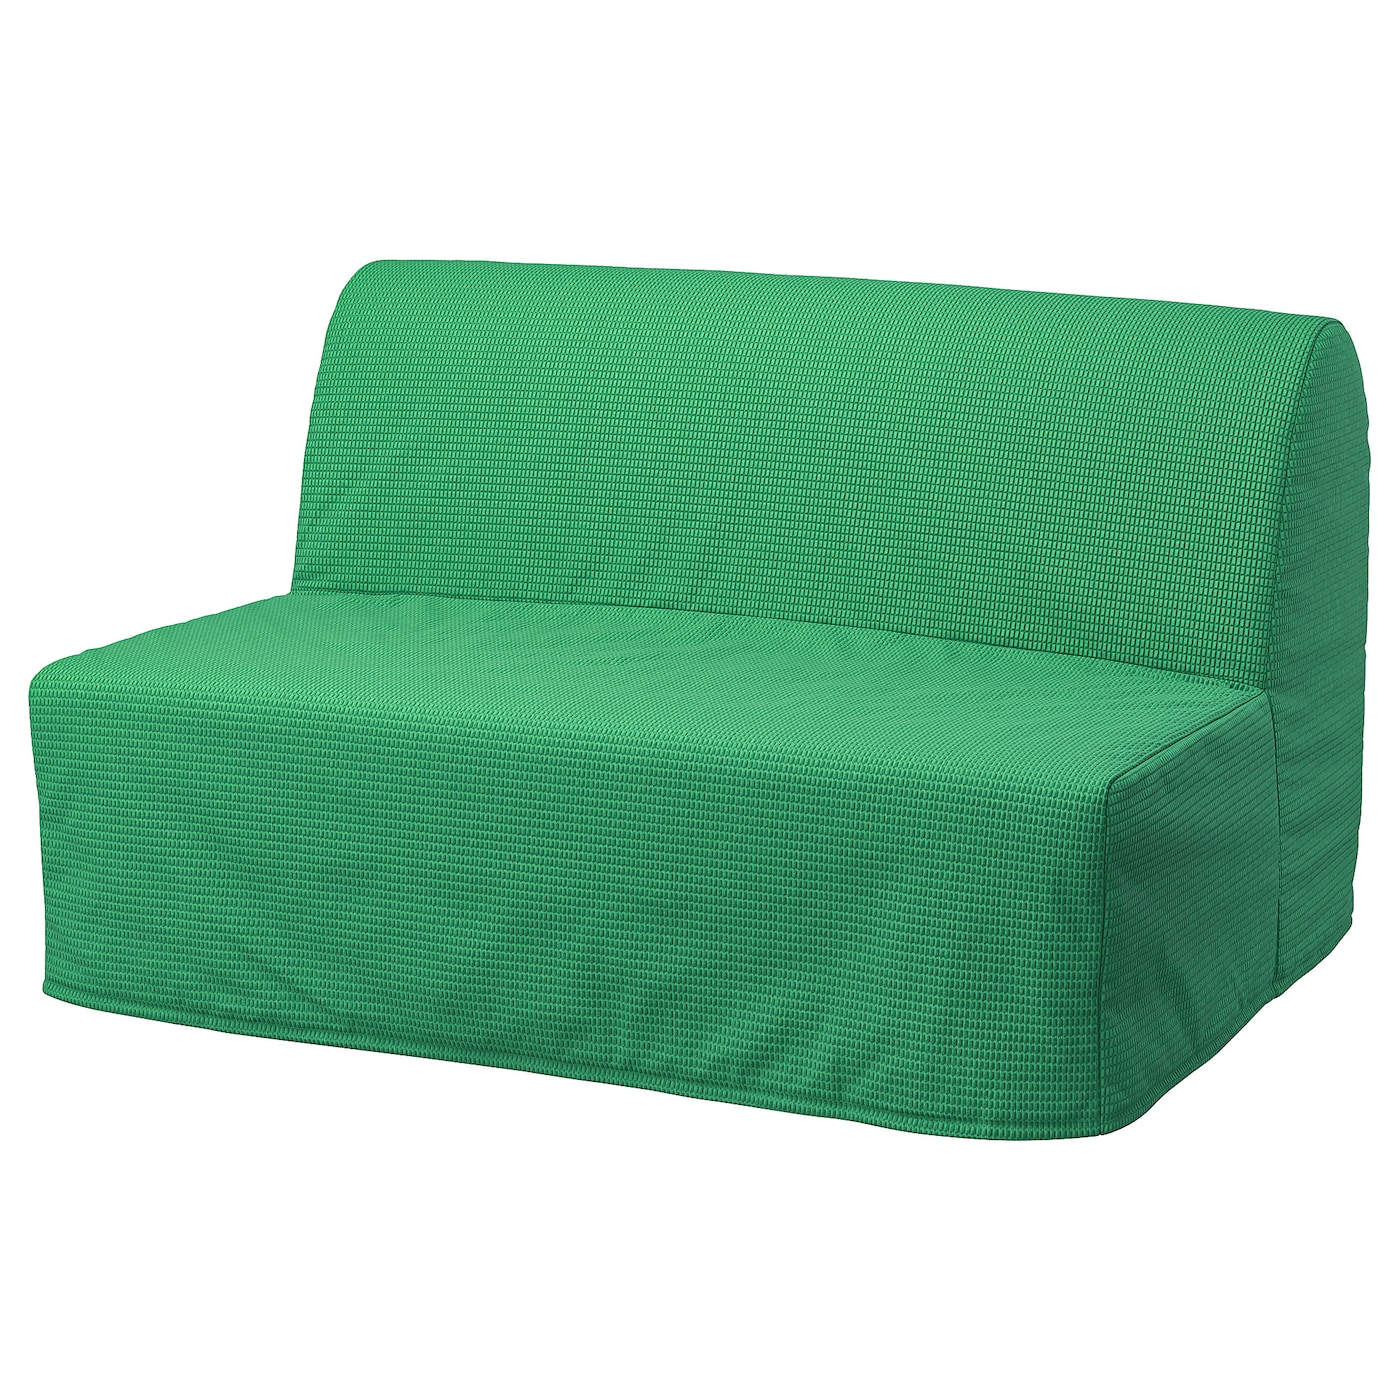 ЛИКСЕЛЕ ЛЁВОС 2 раскладных дивана-кровати, Вансбро ярко-зеленый LYCKSELE LÖVÅS IKEA